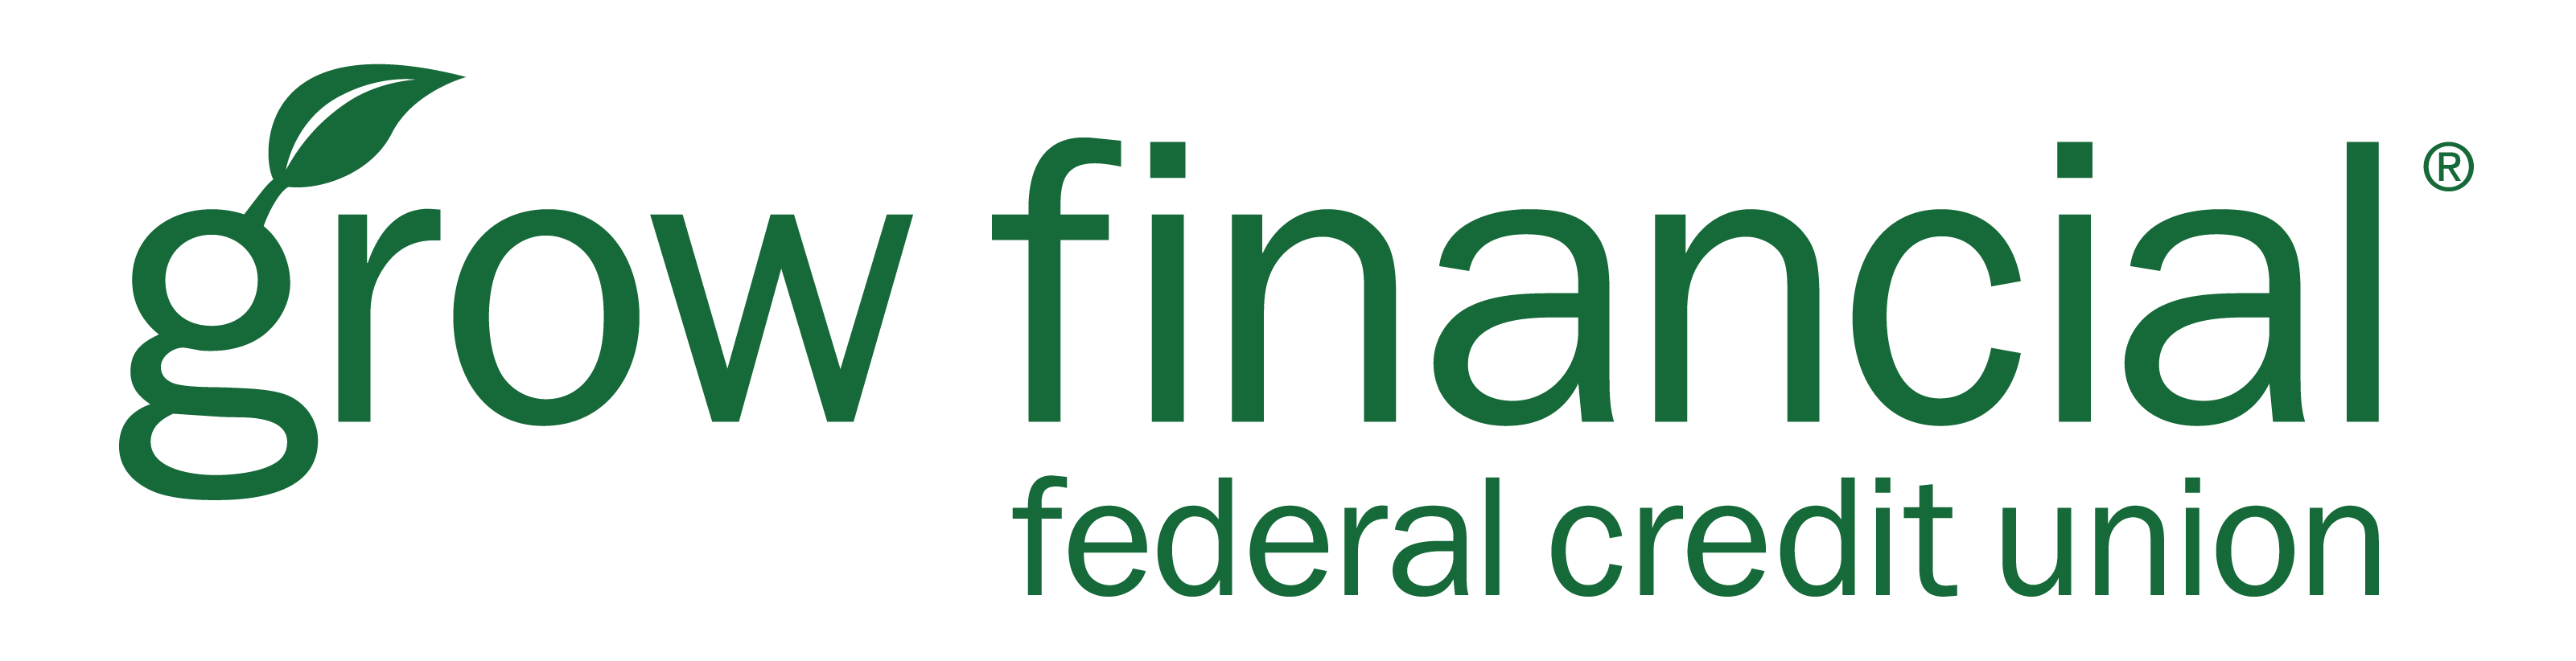 Grow Financial Federal Credit Union logo